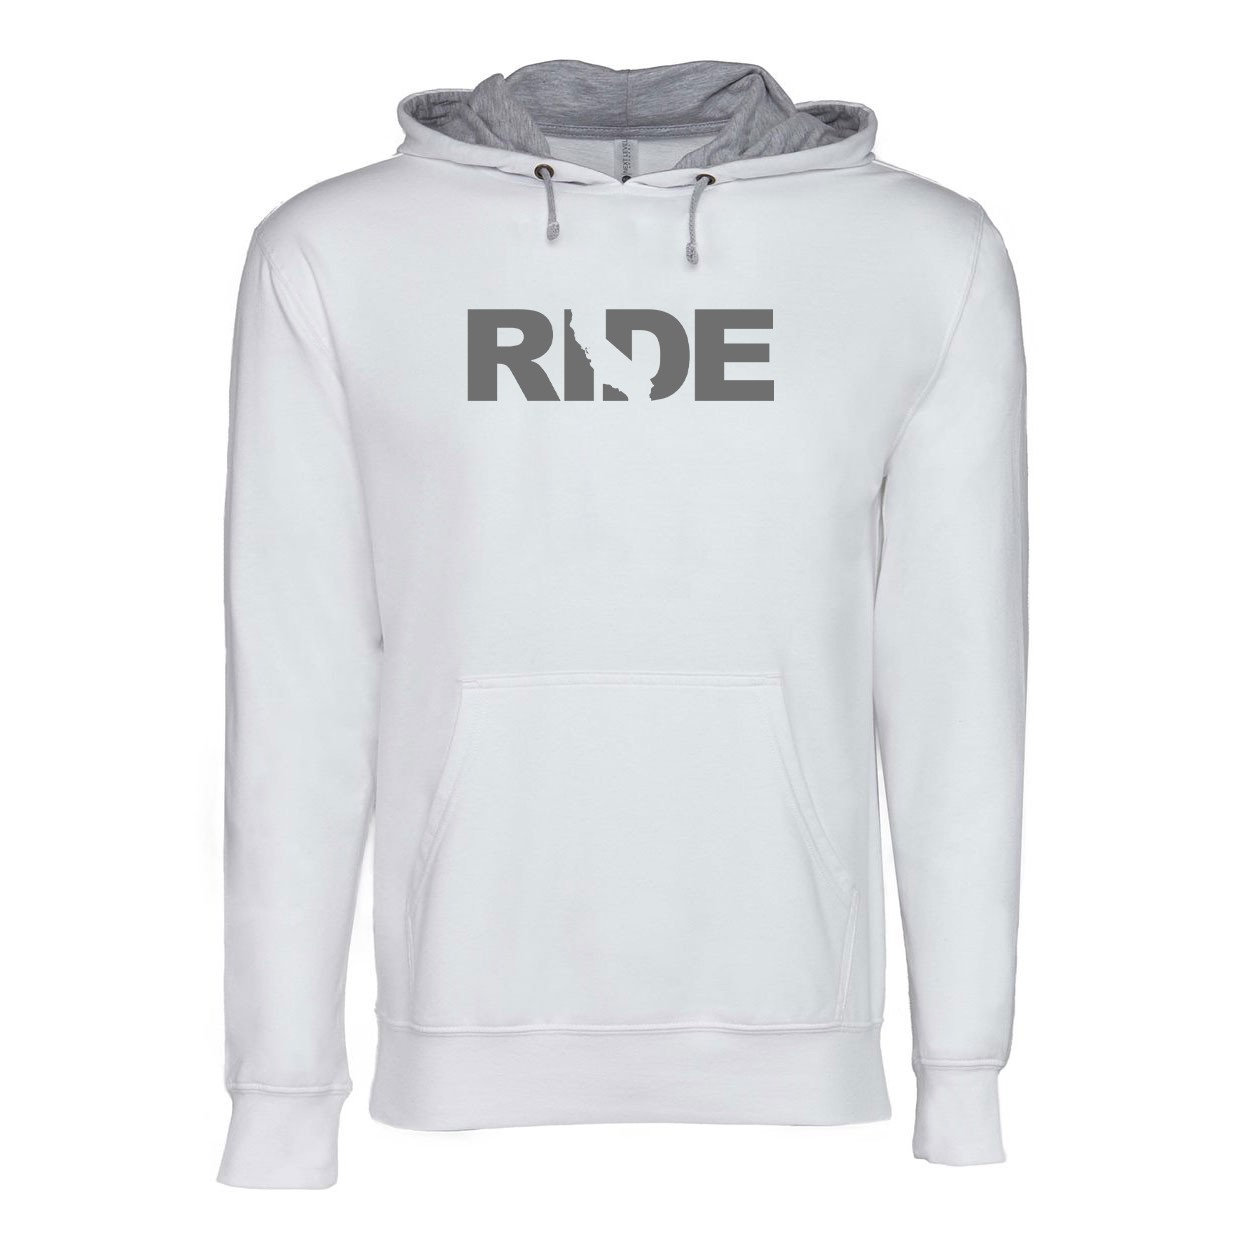 Ride California Classic Lightweight Sweatshirt White/Heather Gray (Gray Logo)